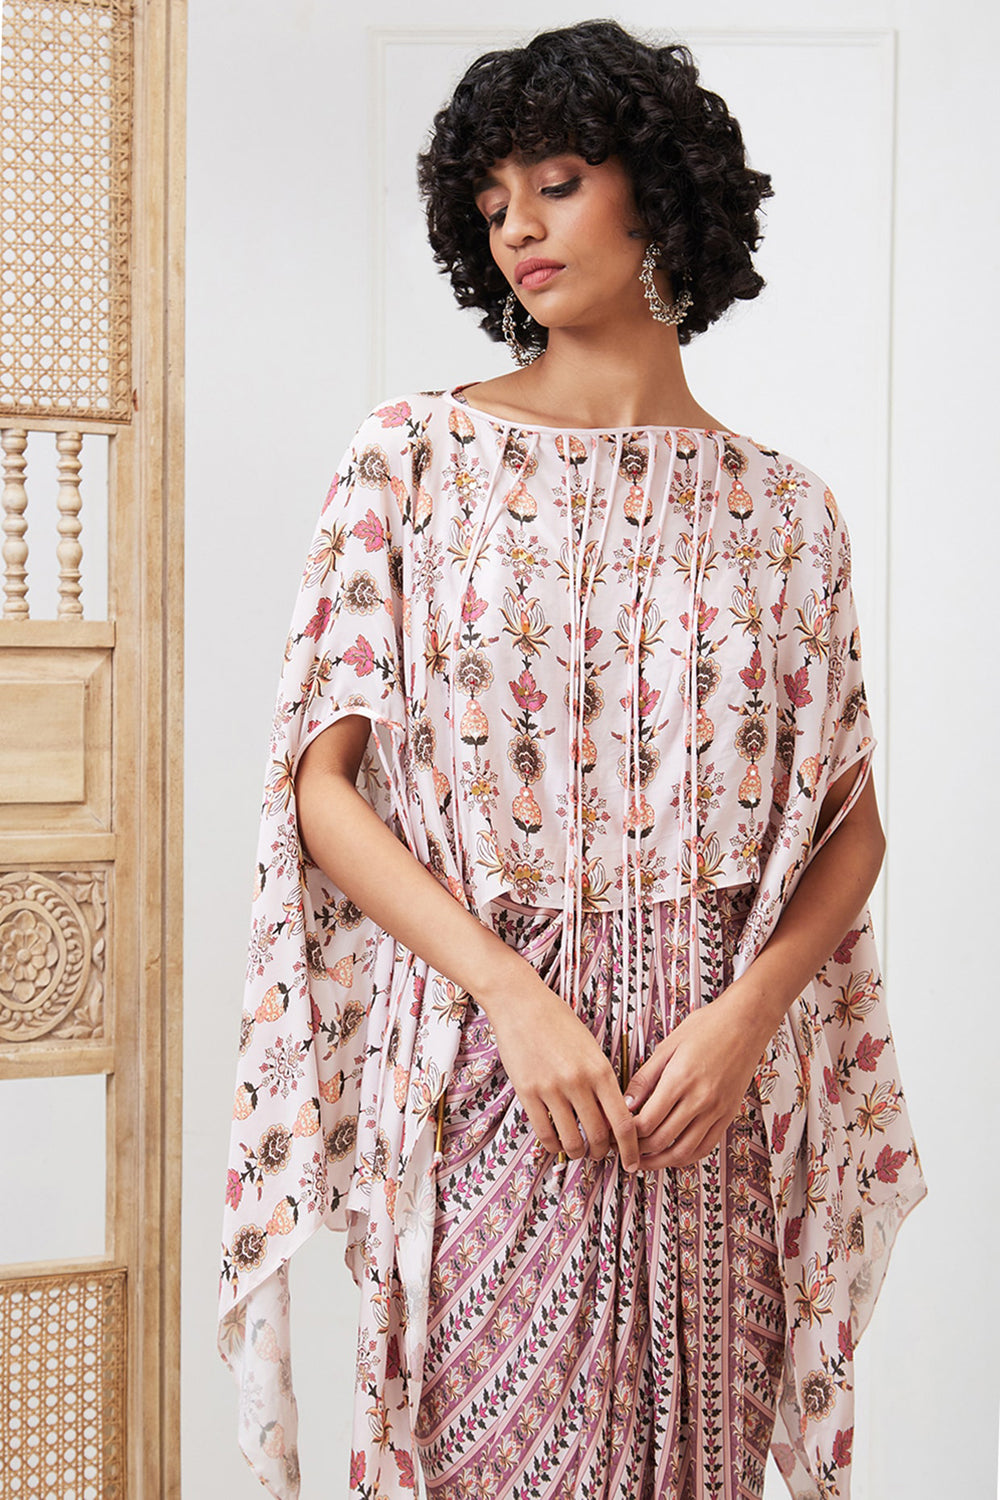 Tabriz Embellished Drape Dress Set